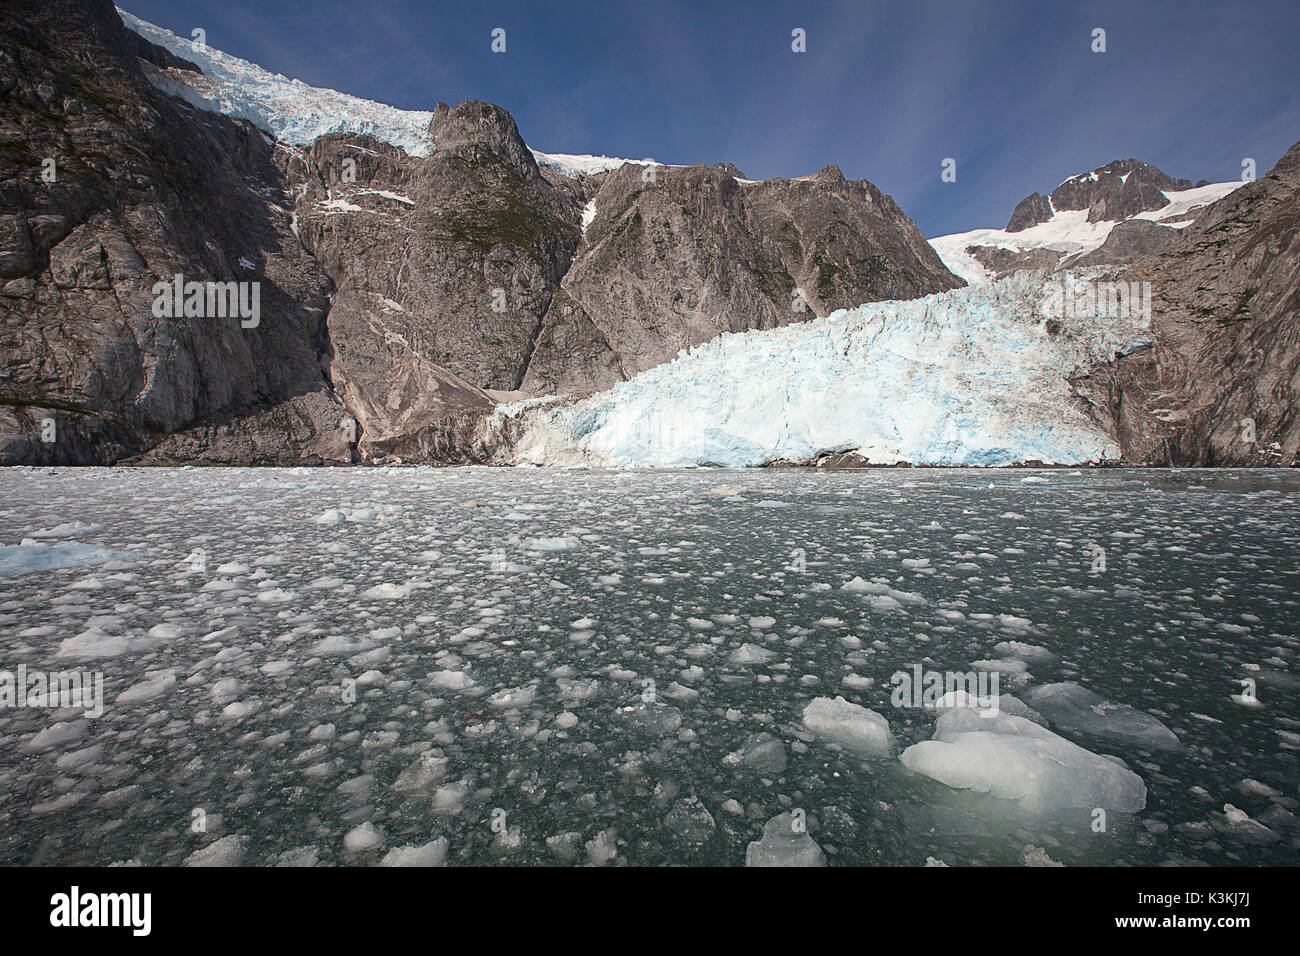 La glace flottante dans le sud de l'Alaska, Kenai fjords, Seward. Banque D'Images